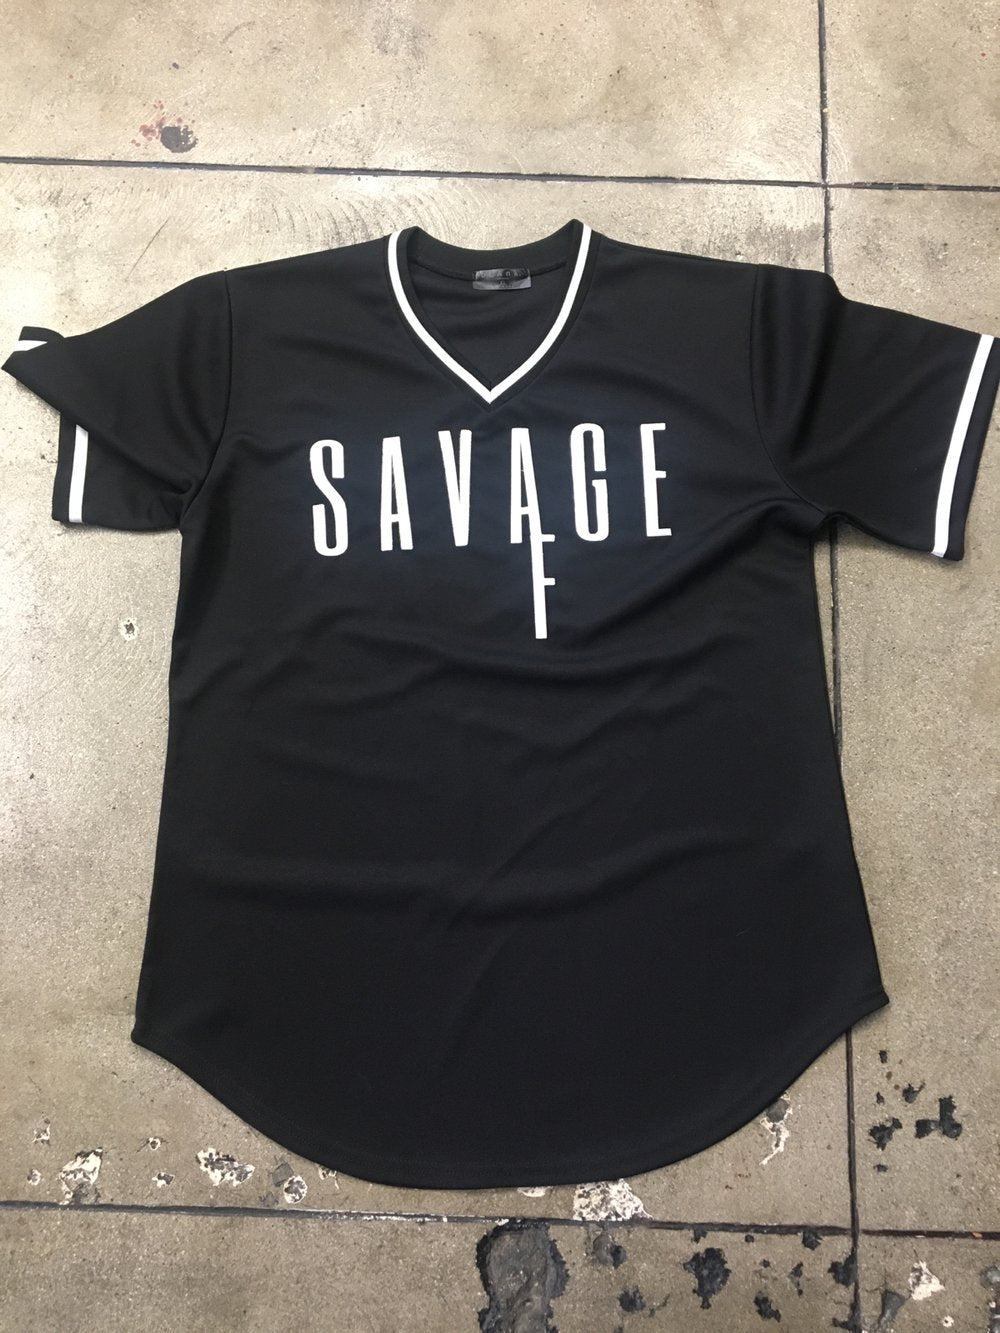 savage baseball jersey